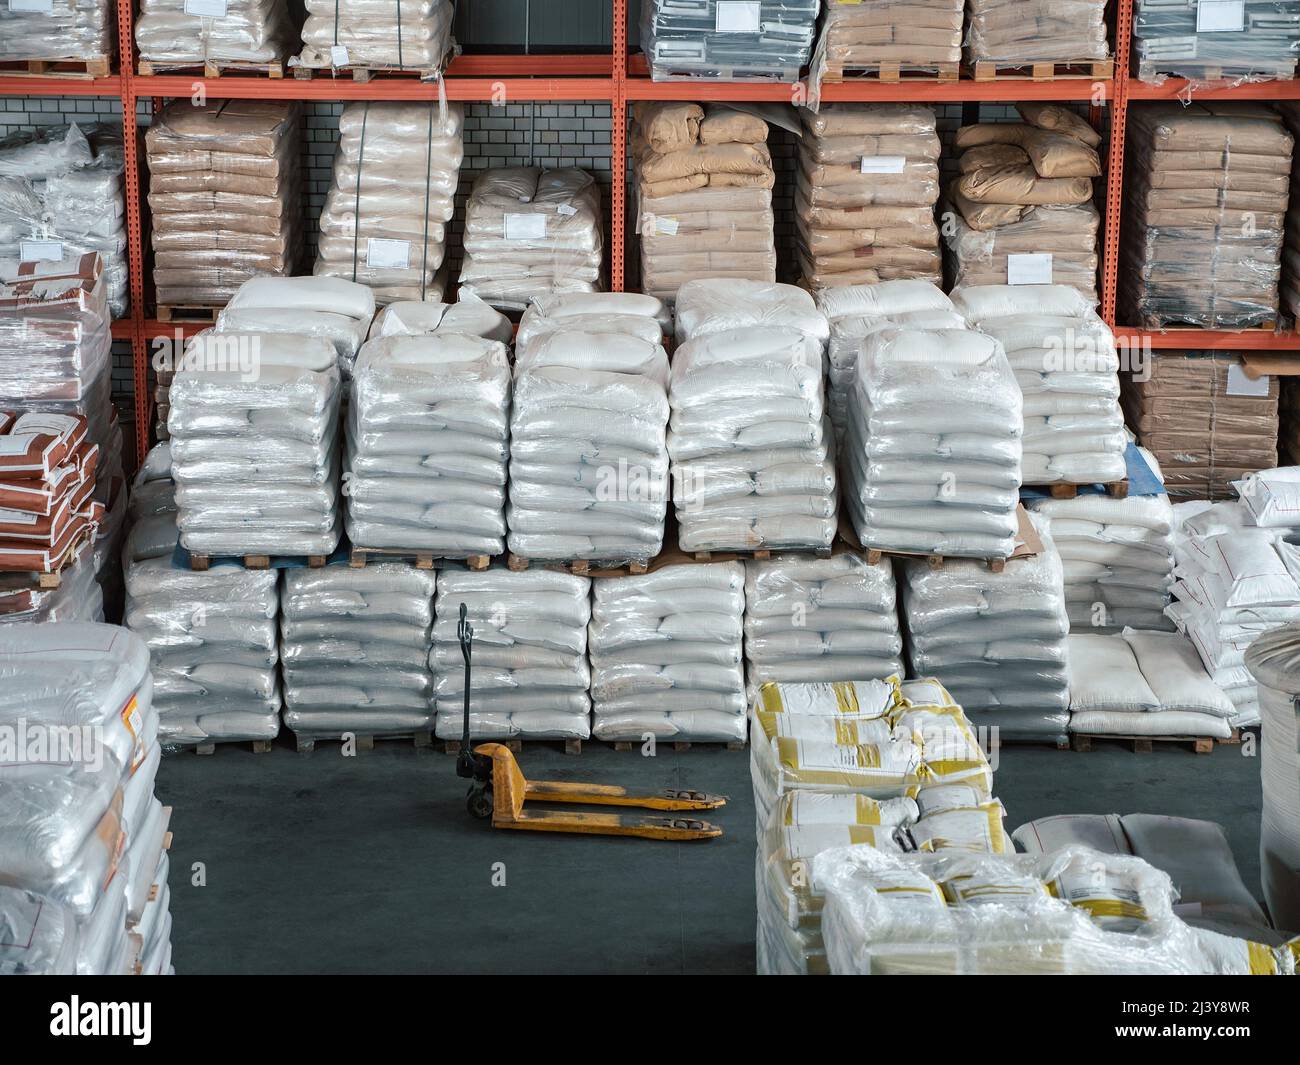 Beaucoup de sacs de céréales, de sucre ou d'autres denrées alimentaires inflammables dans l'entrepôt de fret pour l'exportation. Banque D'Images